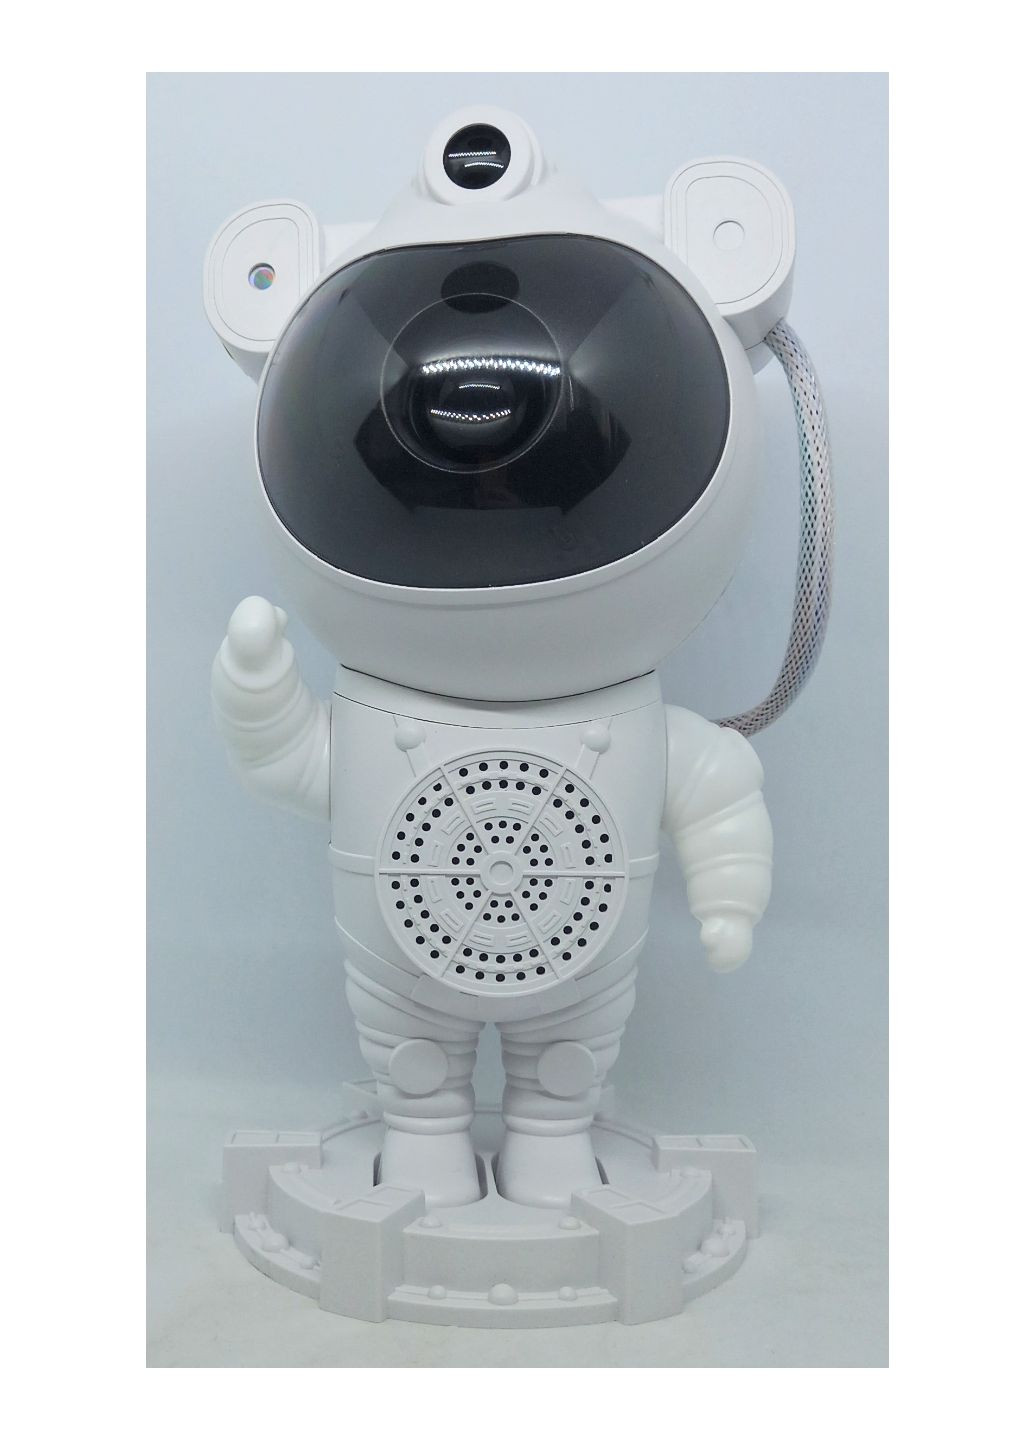 Проектор звёздного неба колонка ночник космонавт большой лазерный космос с пультом д/у астронавт USB ЮСБ No Brand (277817151)